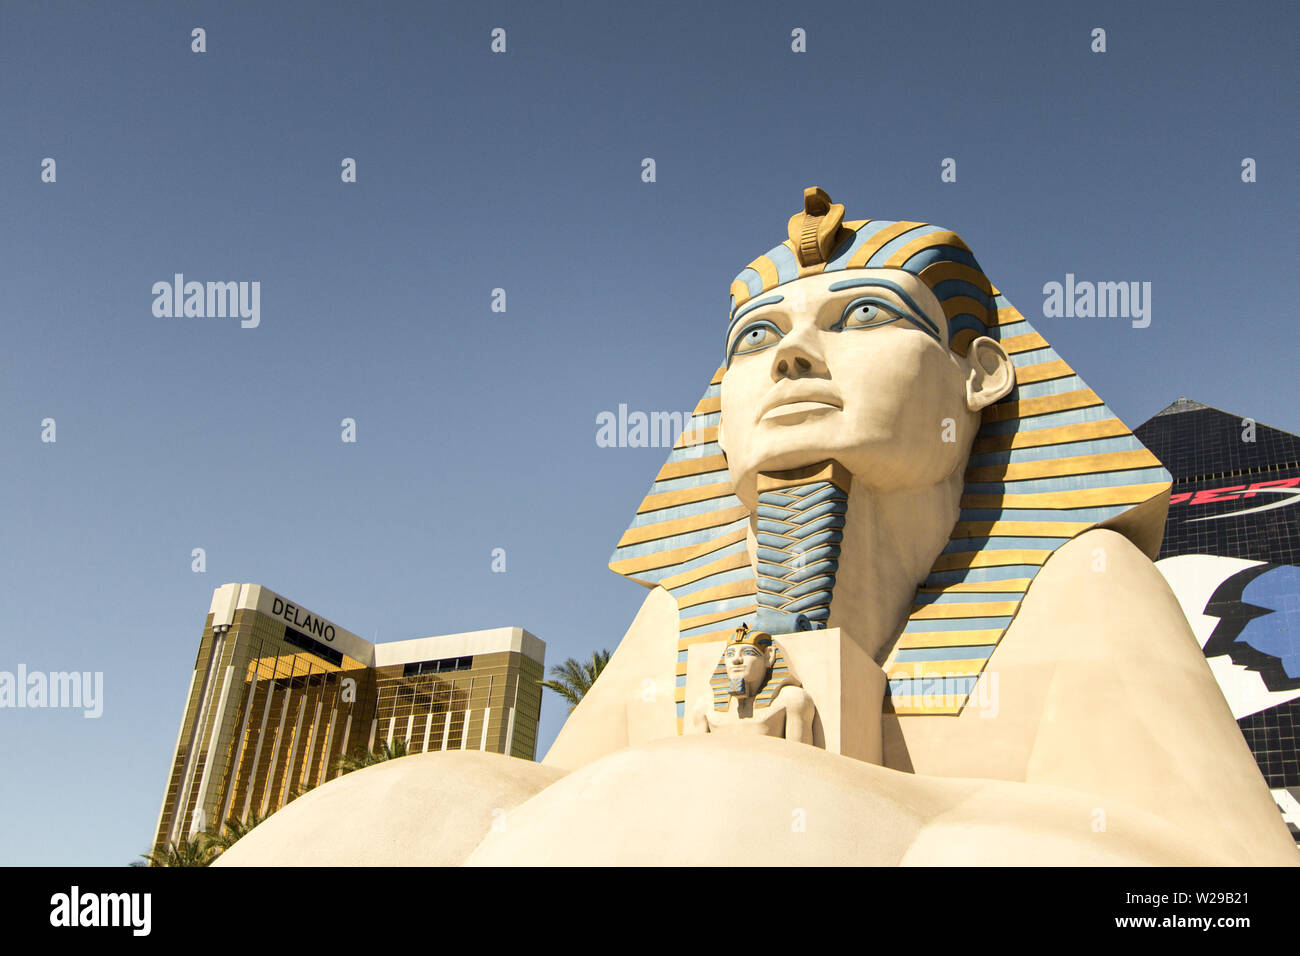 Las Vegas, Nevada, USA - Mai 6, 2019: Die Sphinx außerhalb des Luxor Hotel und Casino auf dem Las Vegas Strip. Stockfoto